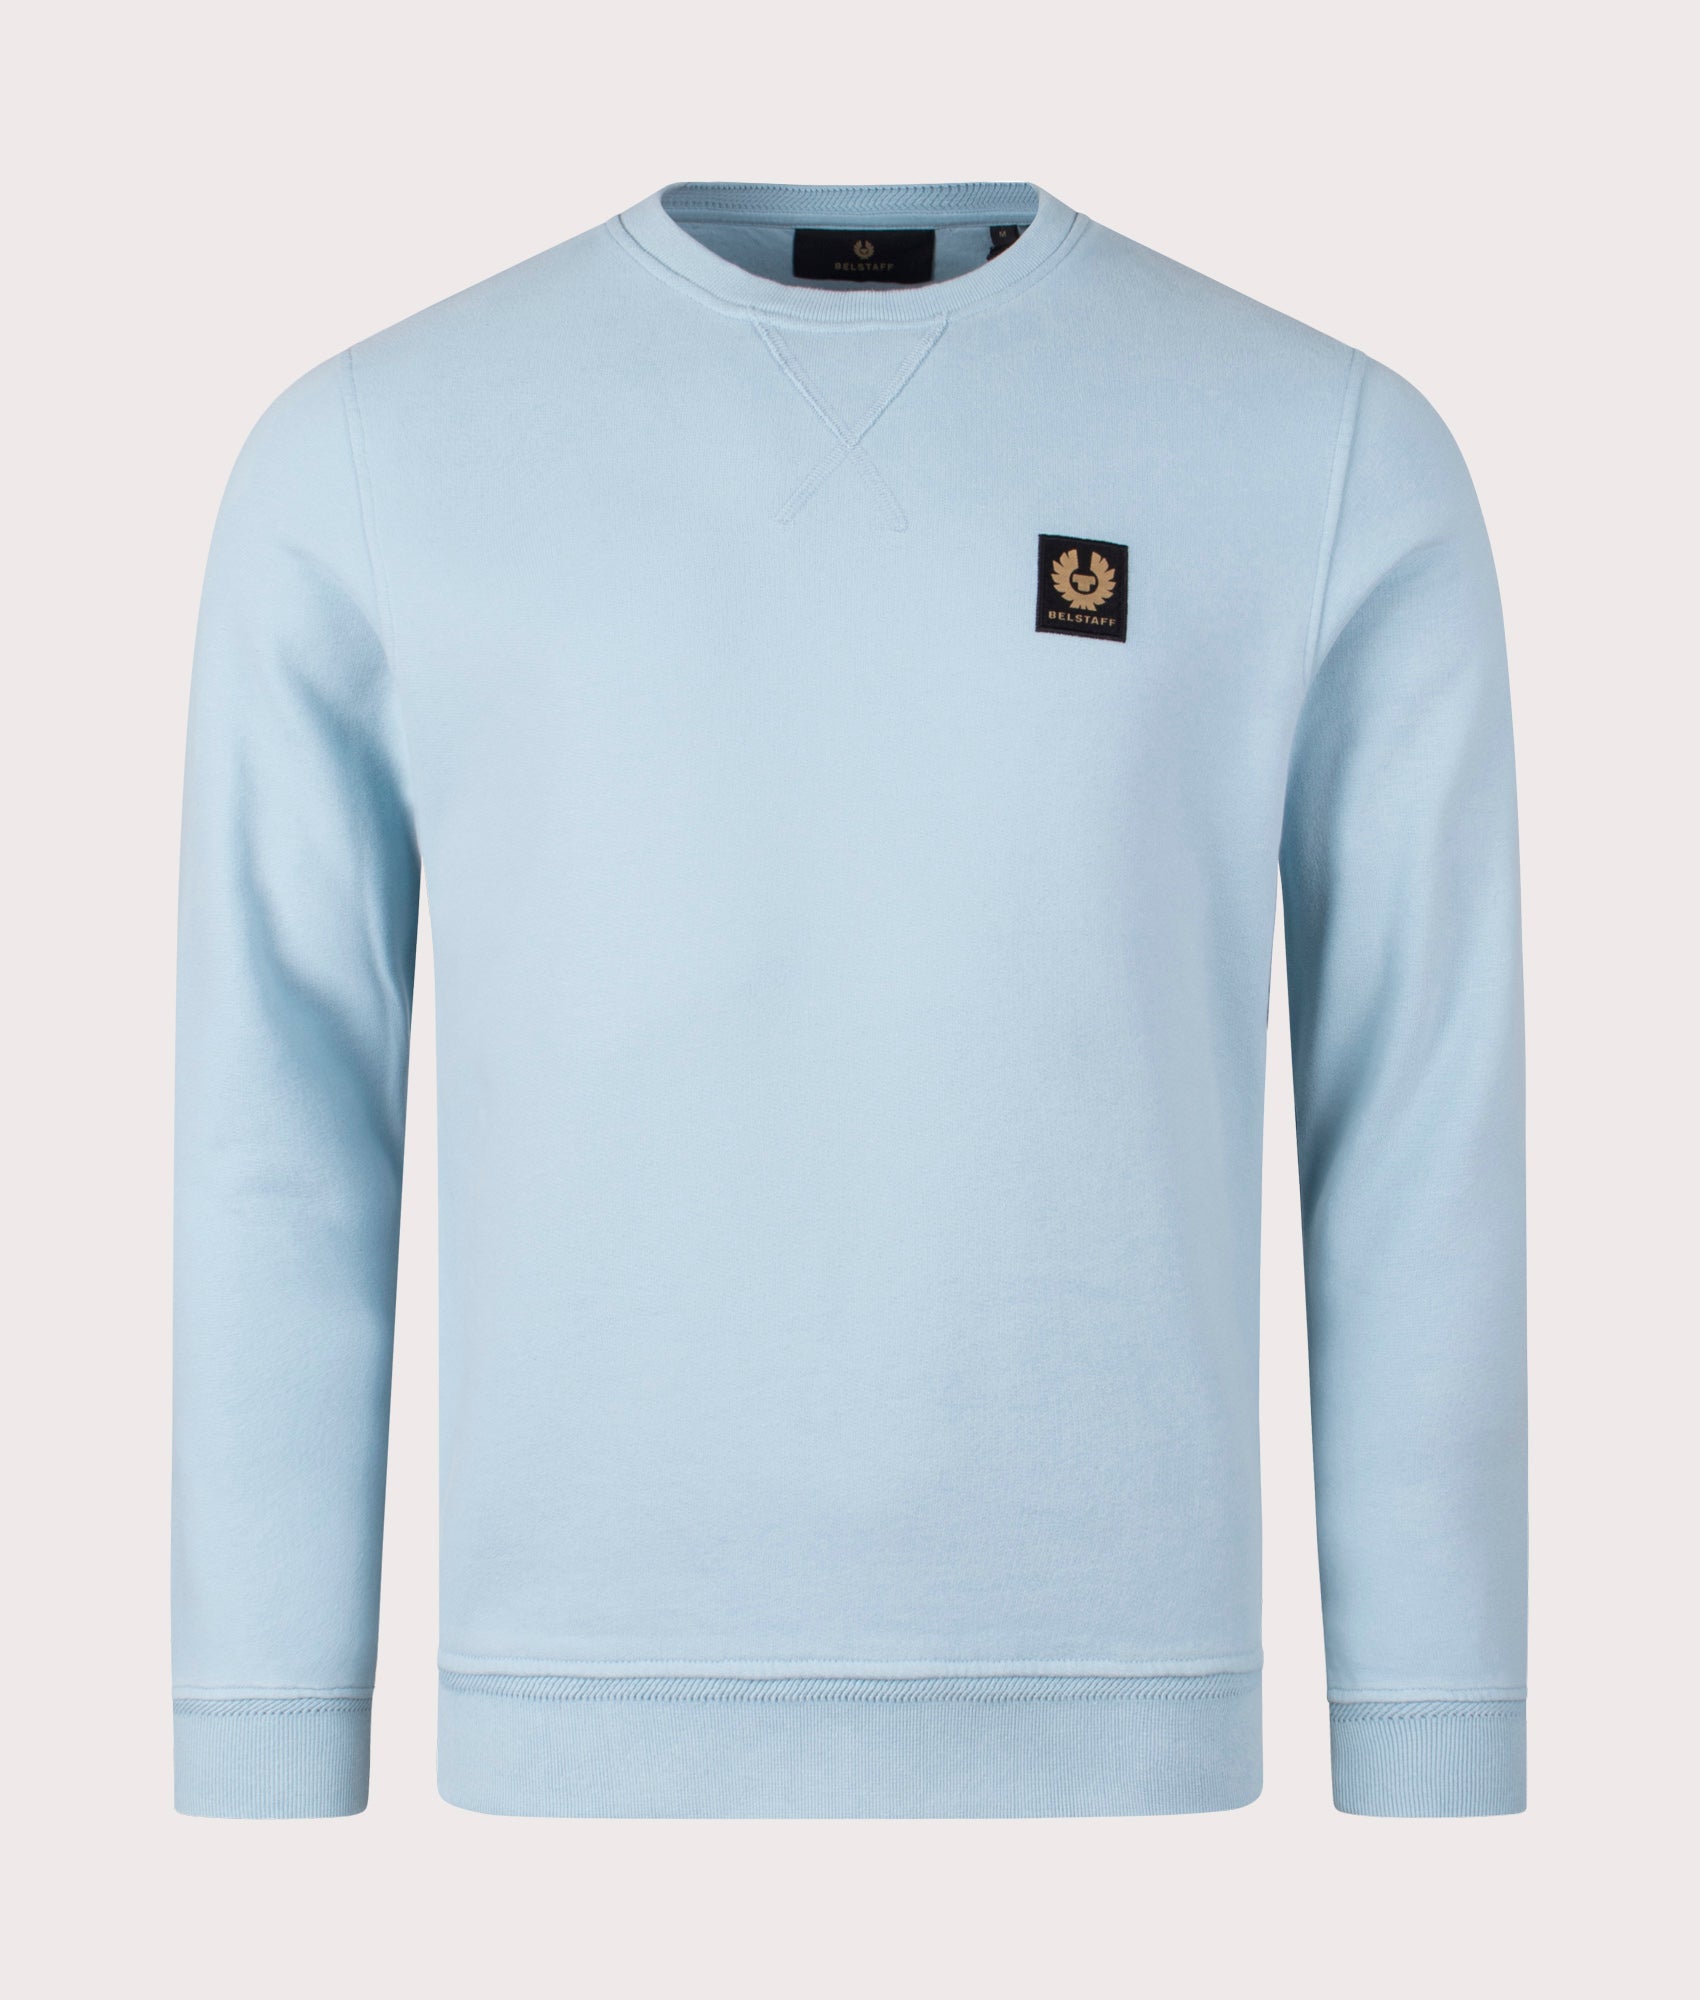 Belstaff Mens Belstaff Sweatshirt - Colour: Skyline Blue - Size: Medium